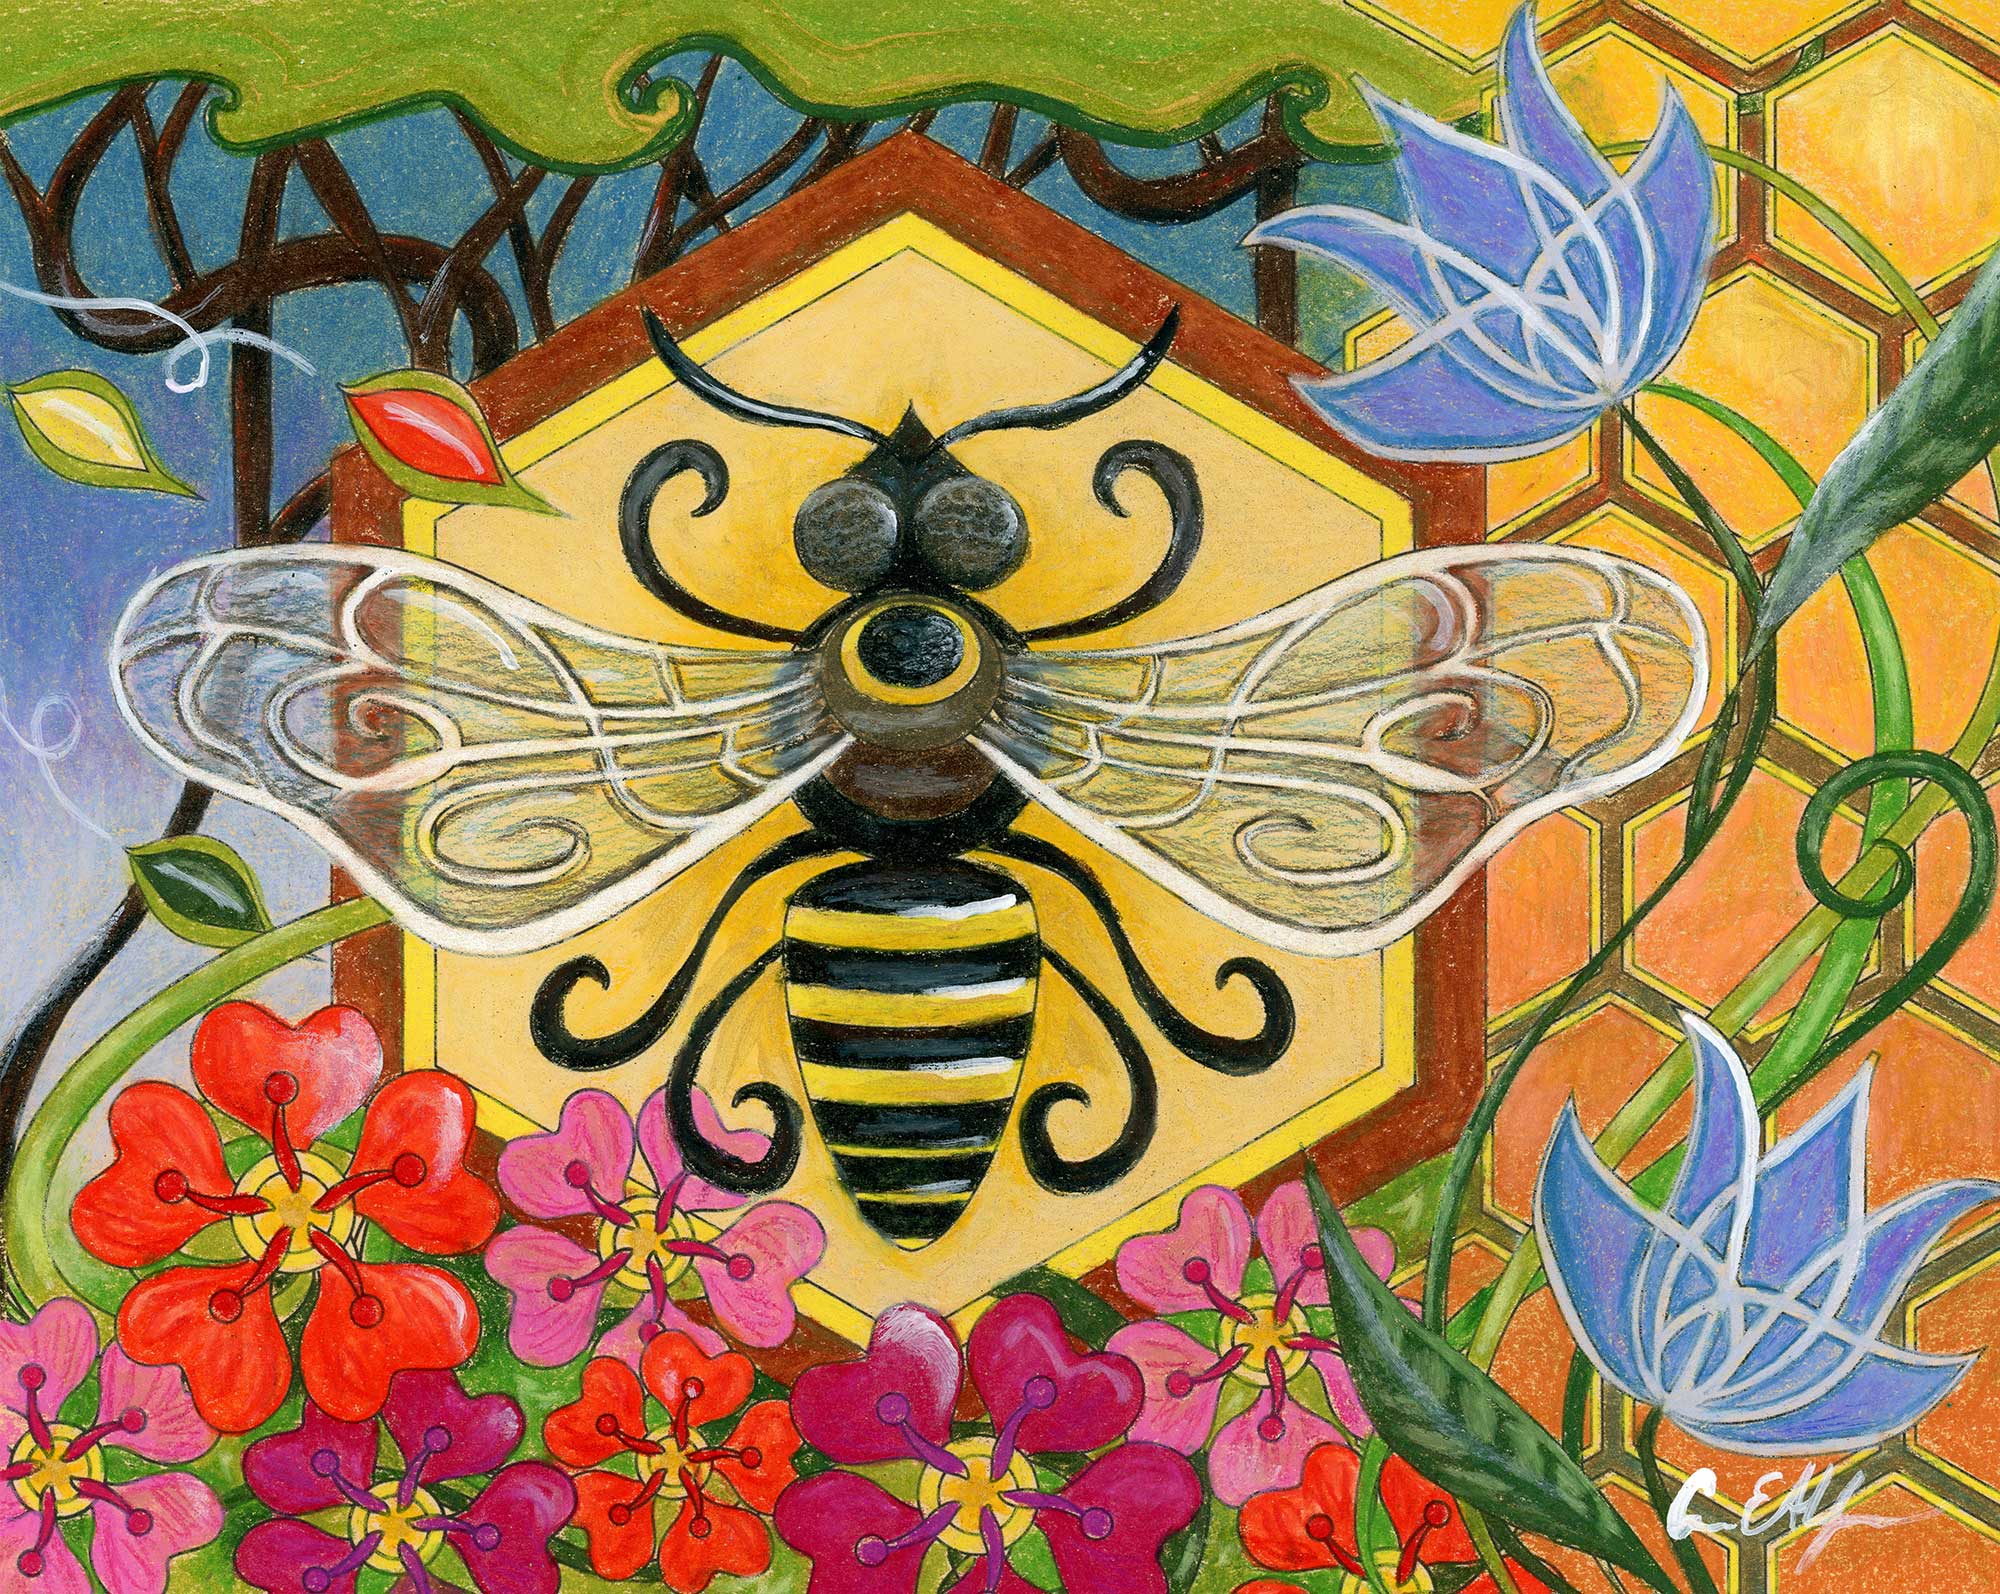 SOLD - "Honey Bee", 8" x 10", mixed media